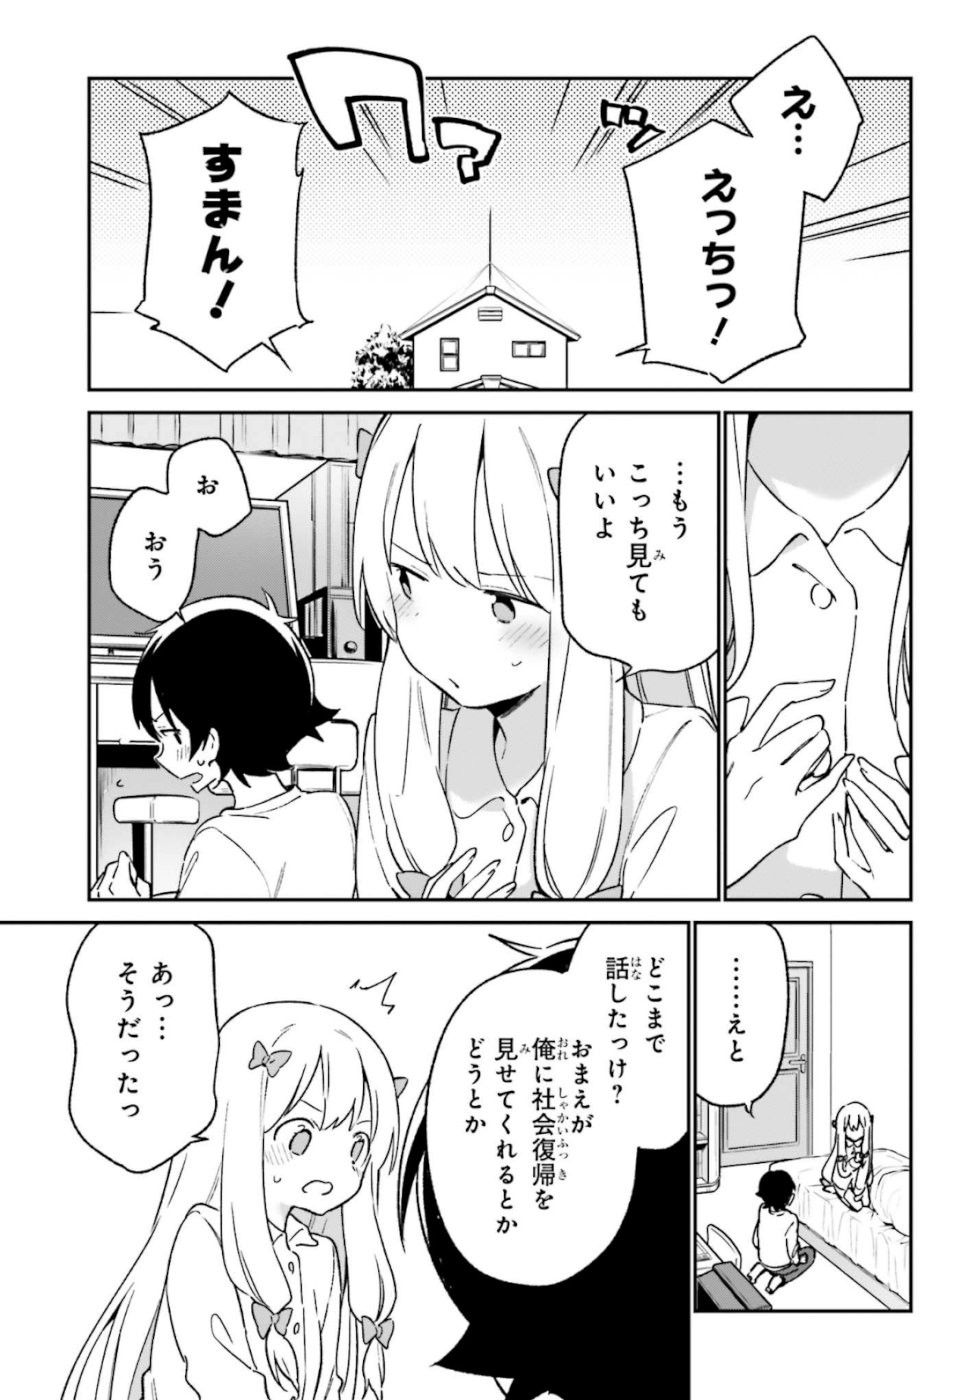 Ero Manga Sensei - Chapter 61 - Page 11